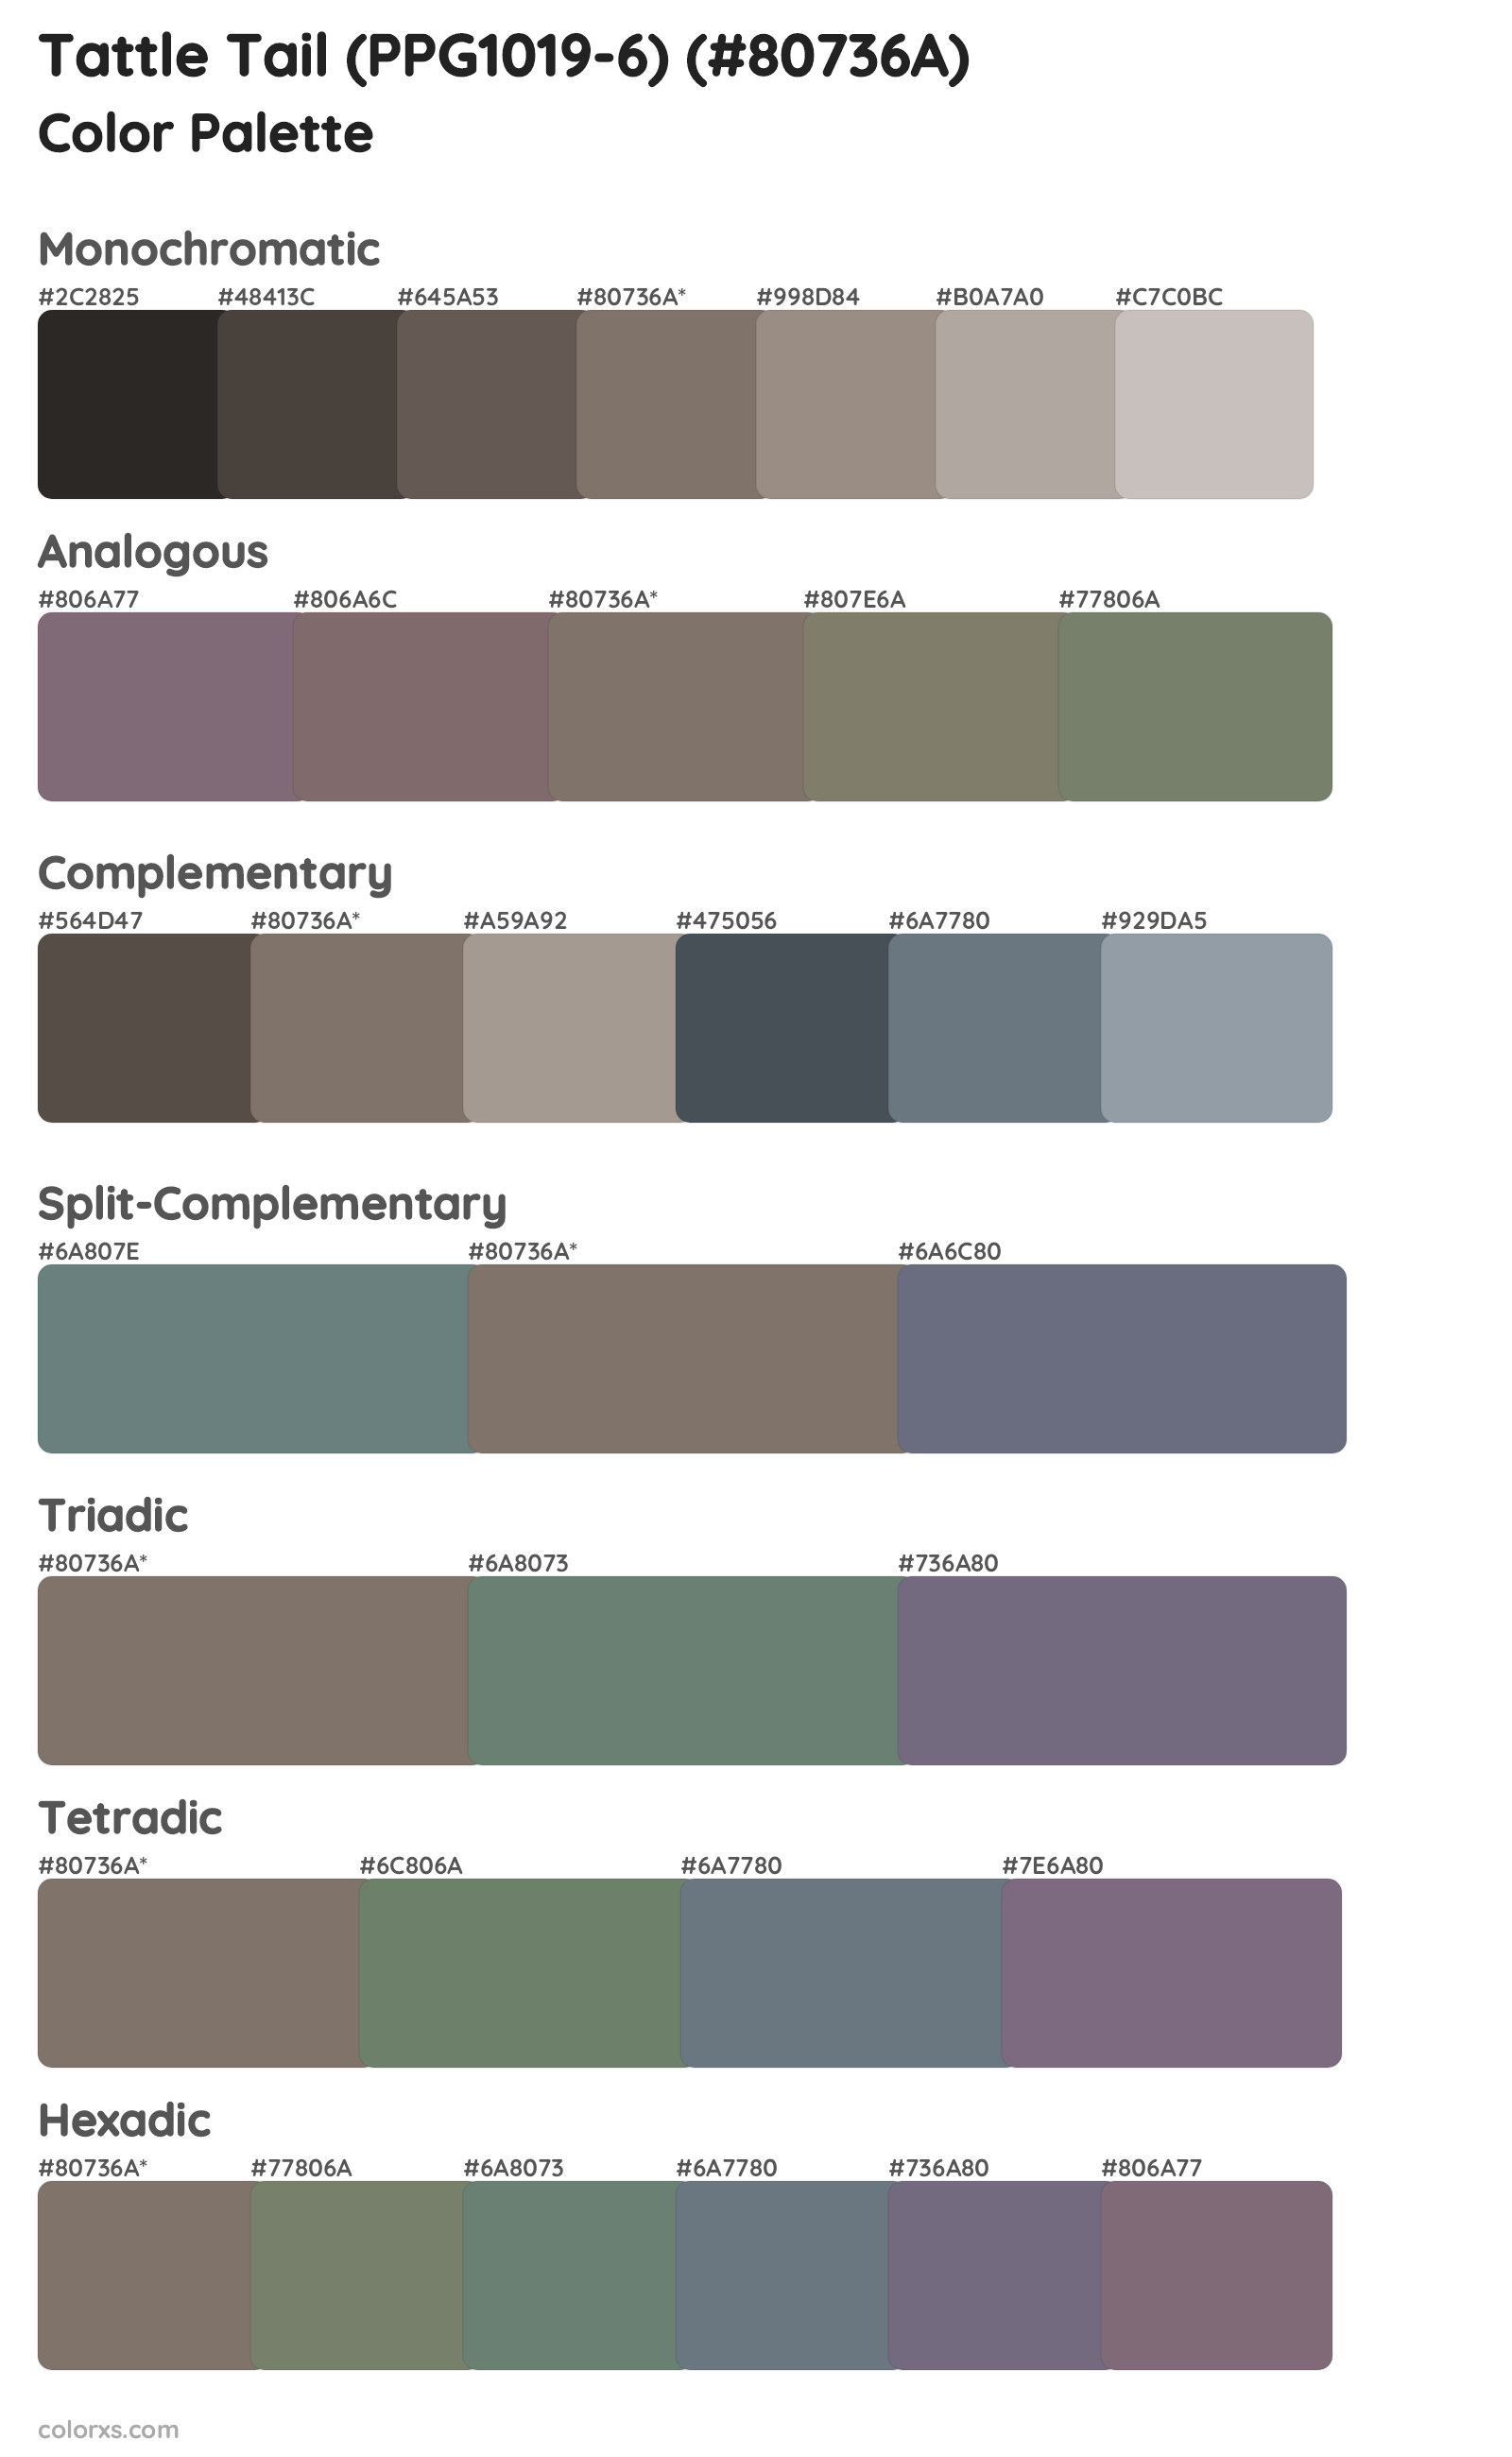 Tattle Tail (PPG1019-6) Color Scheme Palettes